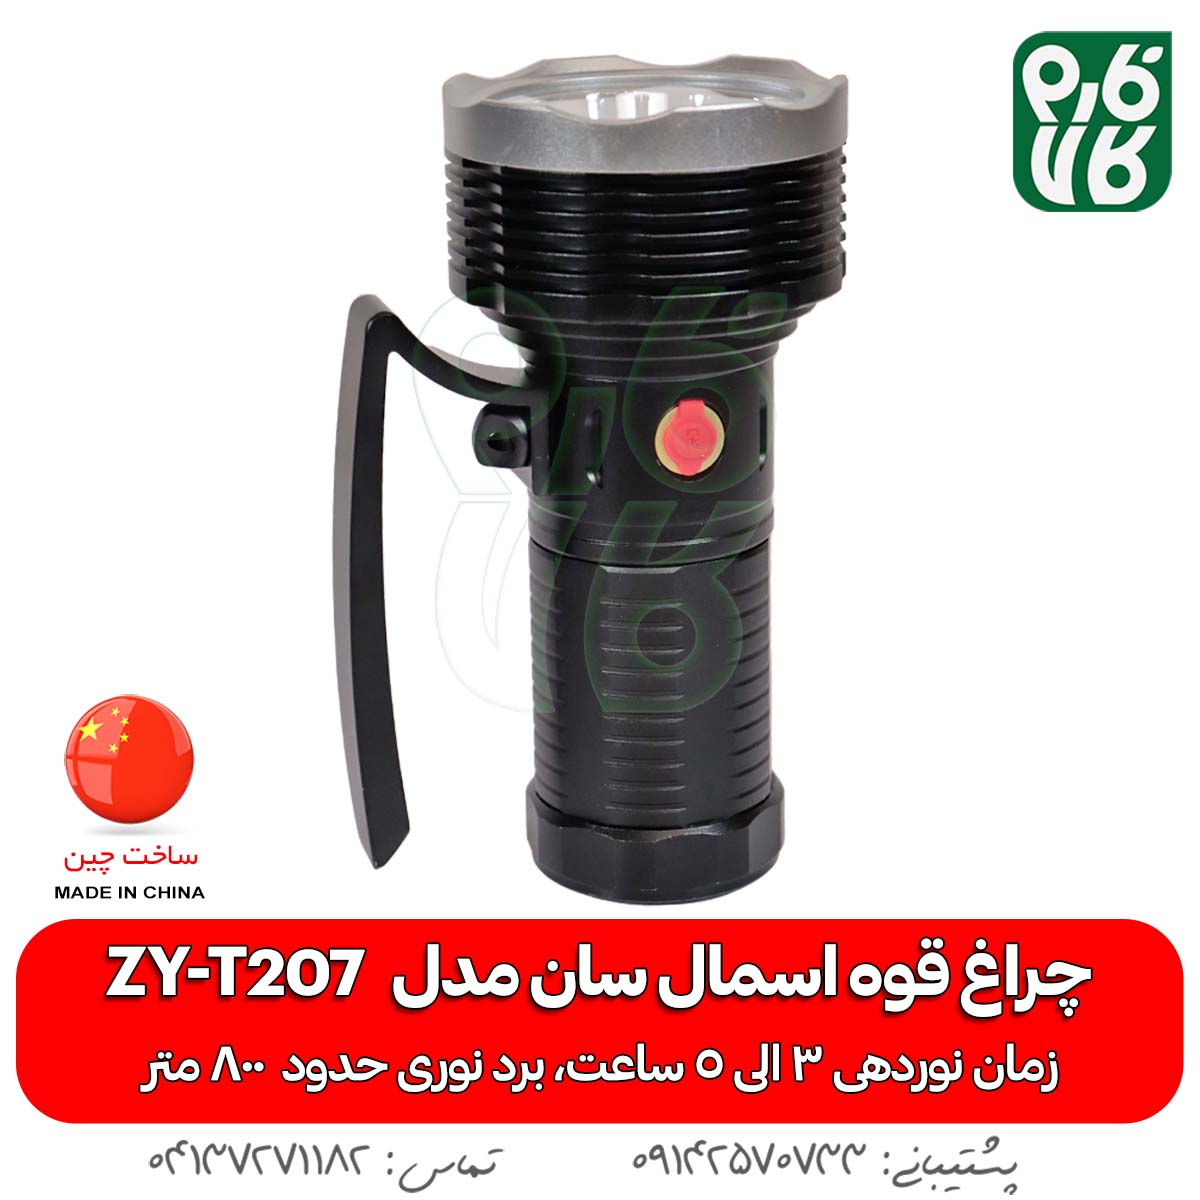 چراغ قوه اسمال سان ZY-T207 - خرید چراغ قوه - قیمت چراغ قوه - چراغ قوه شارژی - چراغ قوه شکاری - چراغ قوه T207